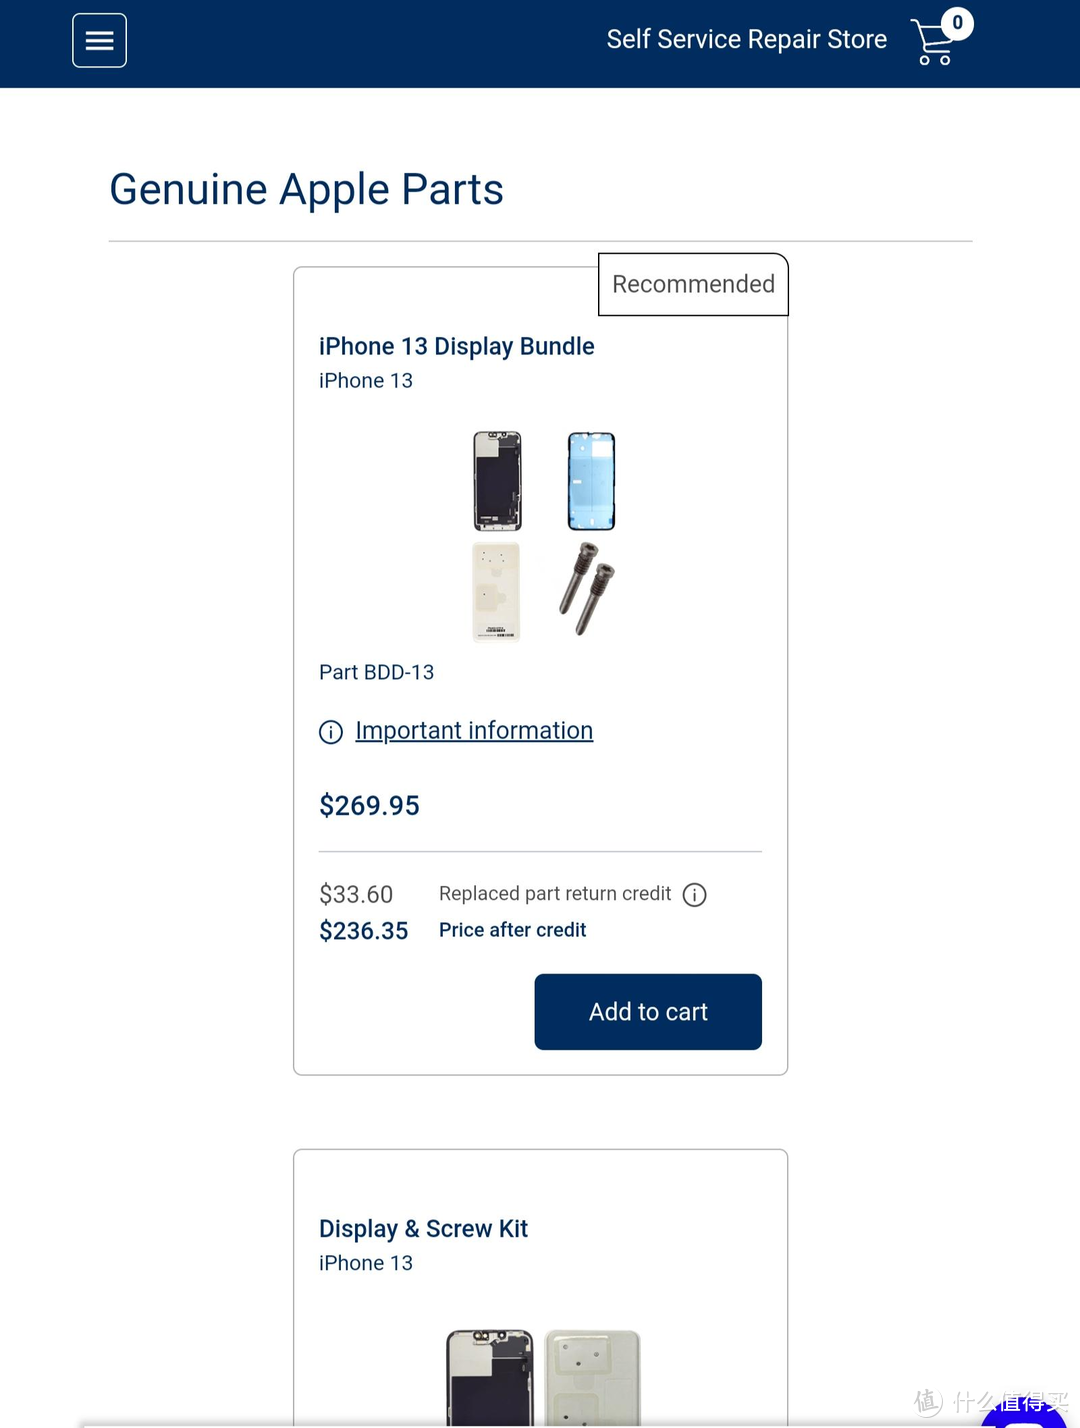 到Apple自助维修计划官方网站上就可以选择你需要的零件了